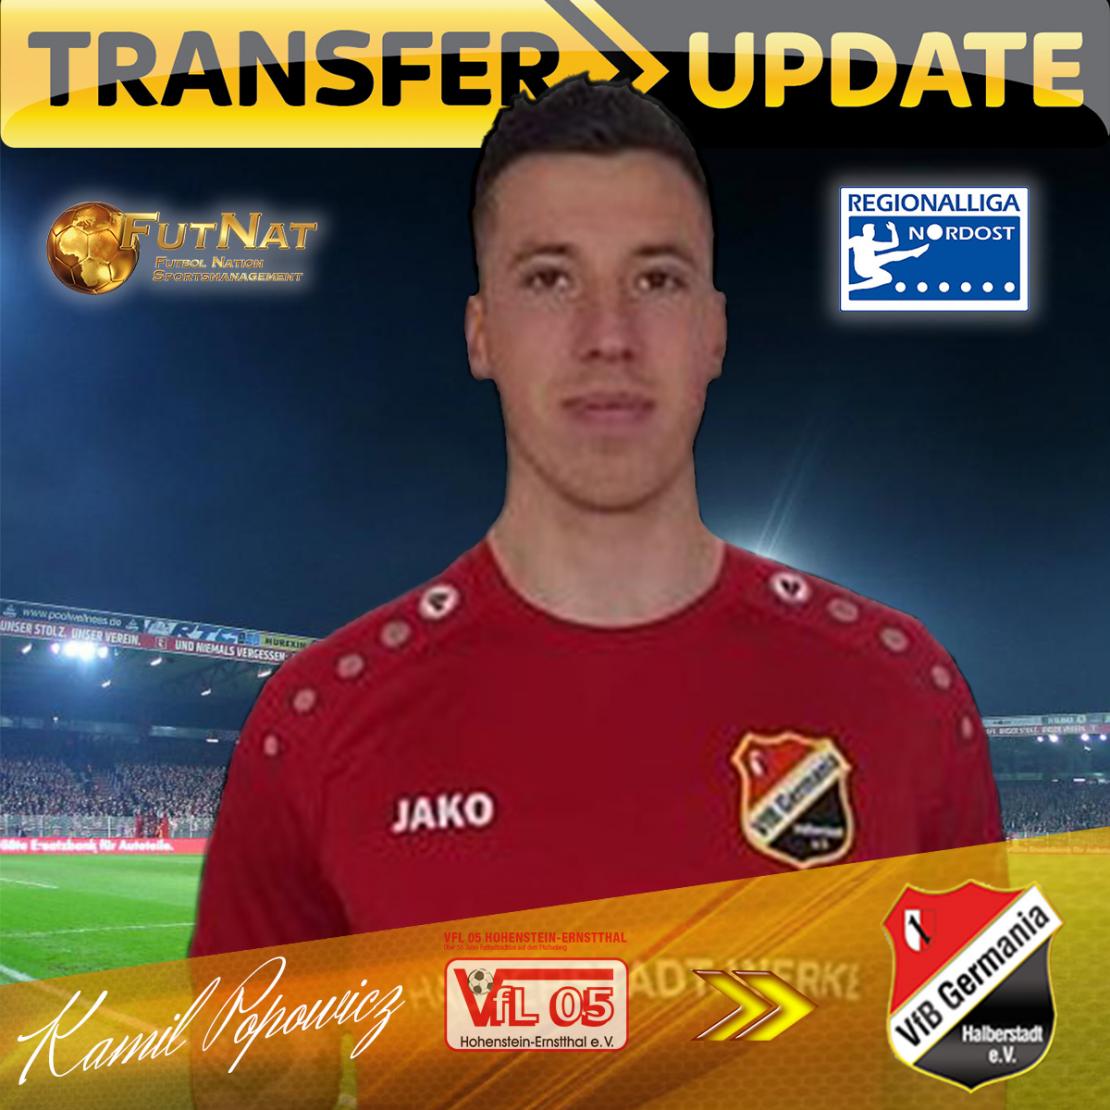 Kmail Popowicz dołącza do niemieckiej Regionalliga